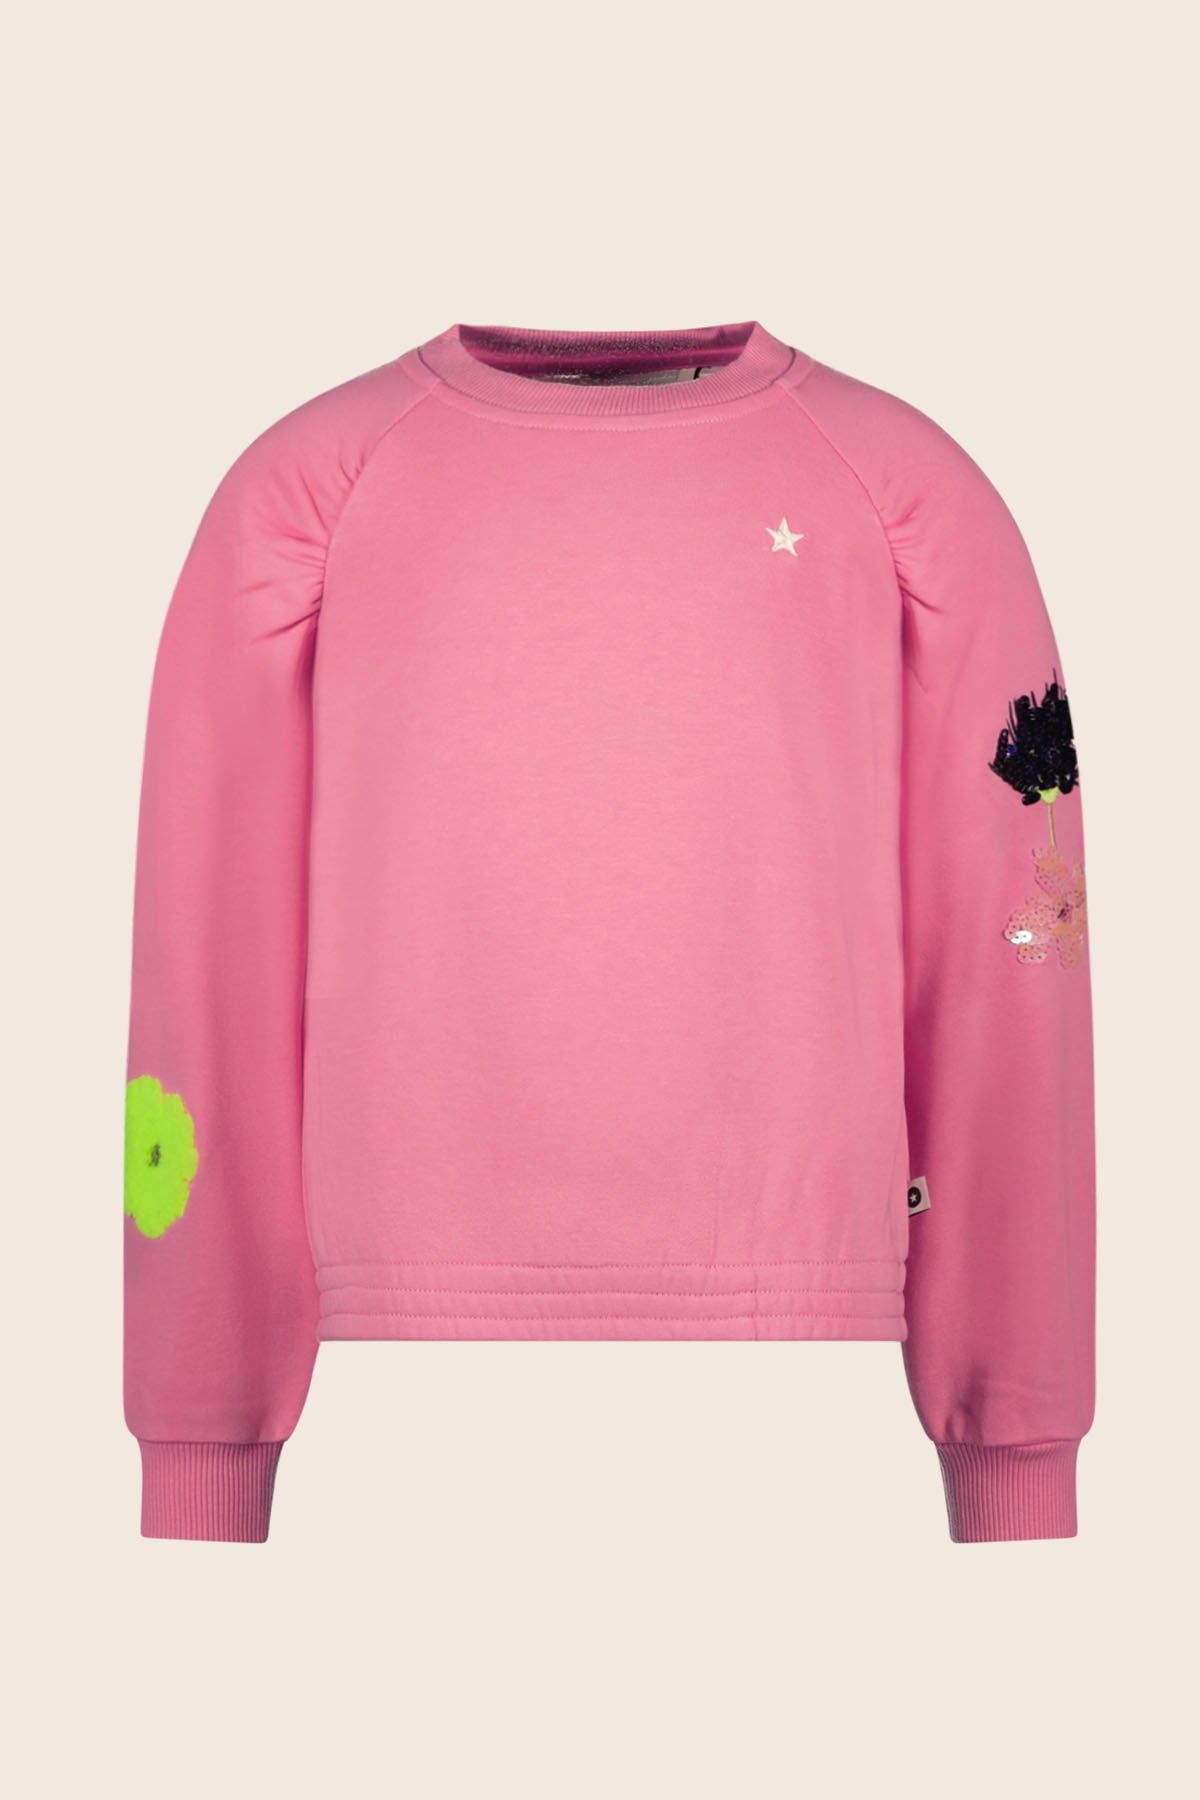 Trui / Sweater Sweater ZOE pink